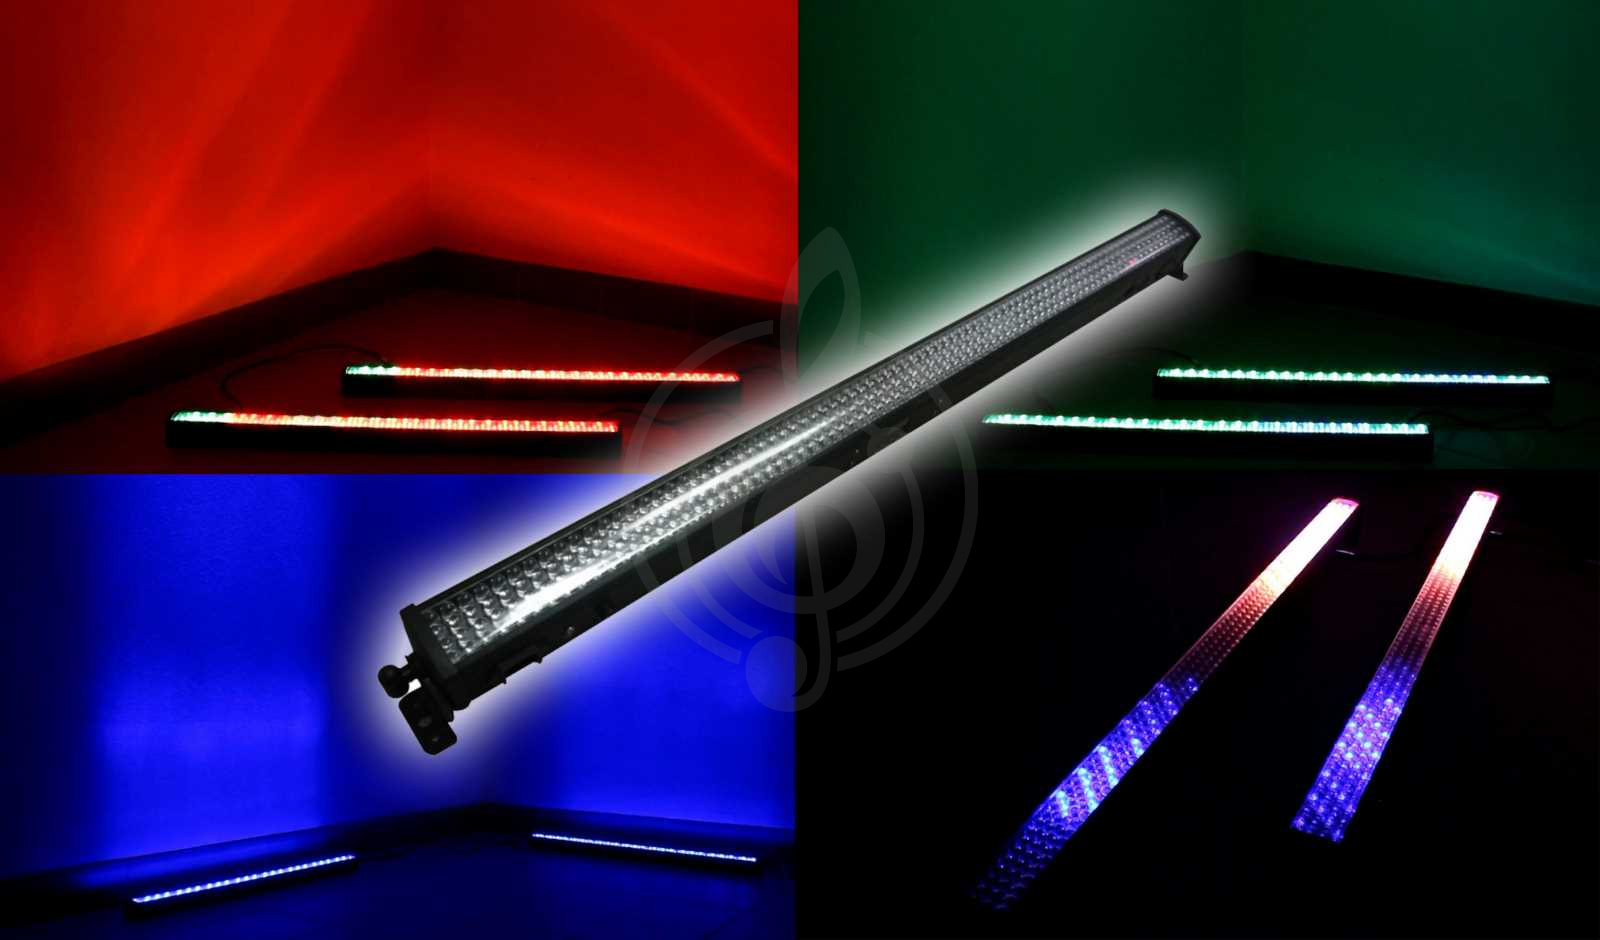 Заливной светильник (LED wash) Заливные светильники (LED wash) Involight Involight LED BAR308 - светодиодная панель, светодиодов: 320 шт. RGB, 8 секций, DMX-512, звук.актив LED BAR308 - фото 1